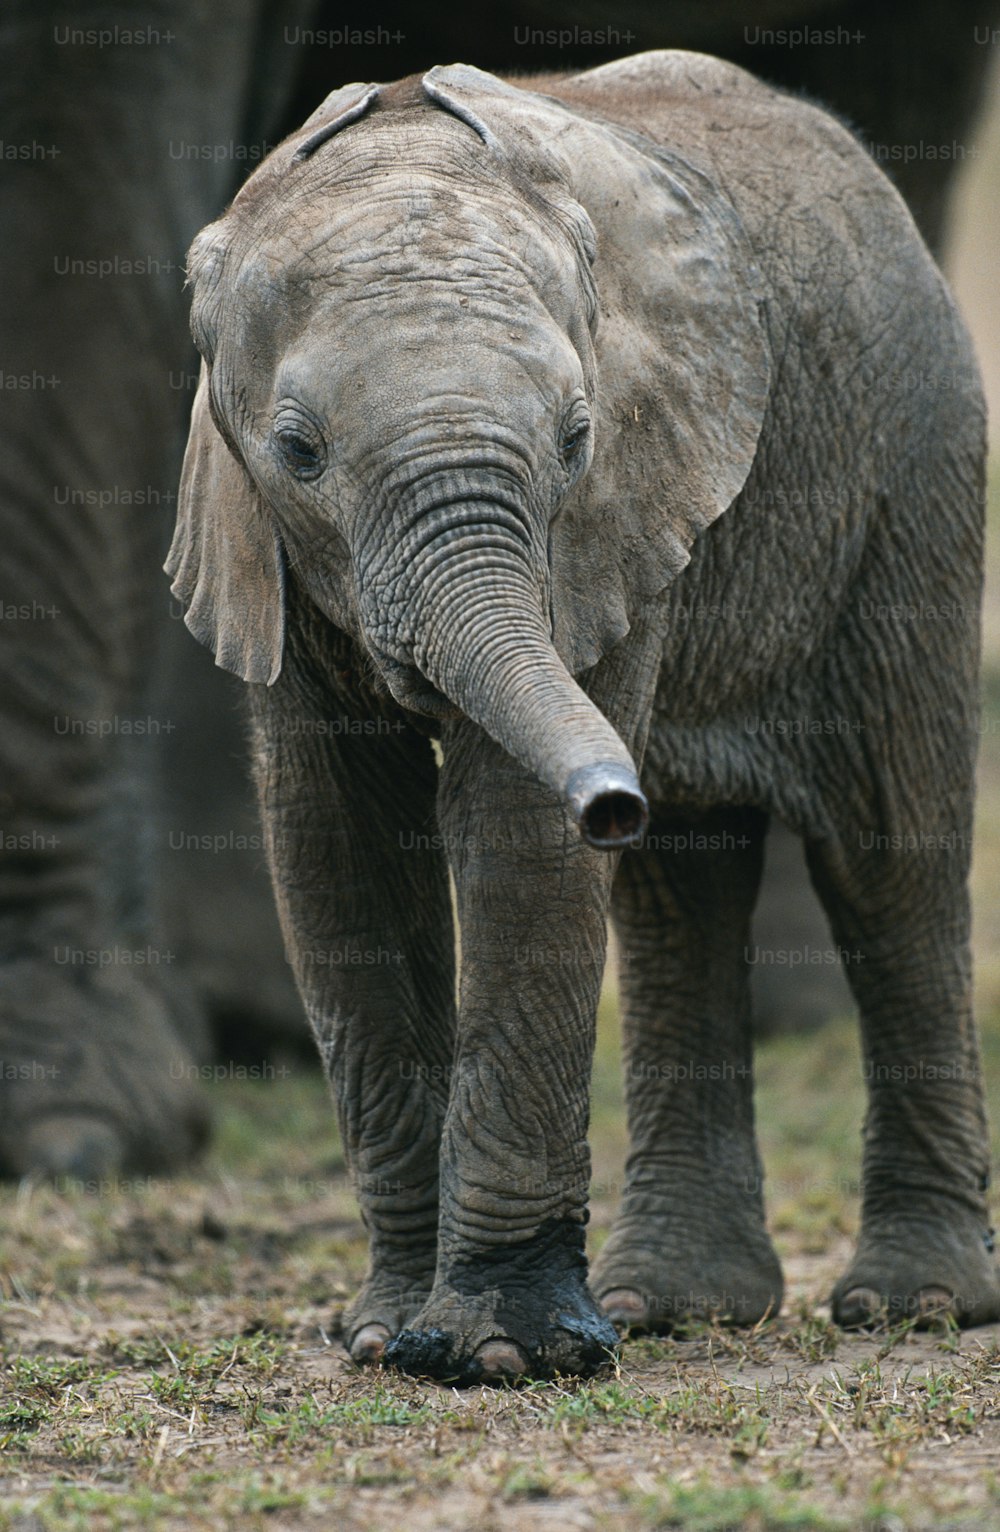 ein Babyelefant, der neben einem erwachsenen Elefanten steht